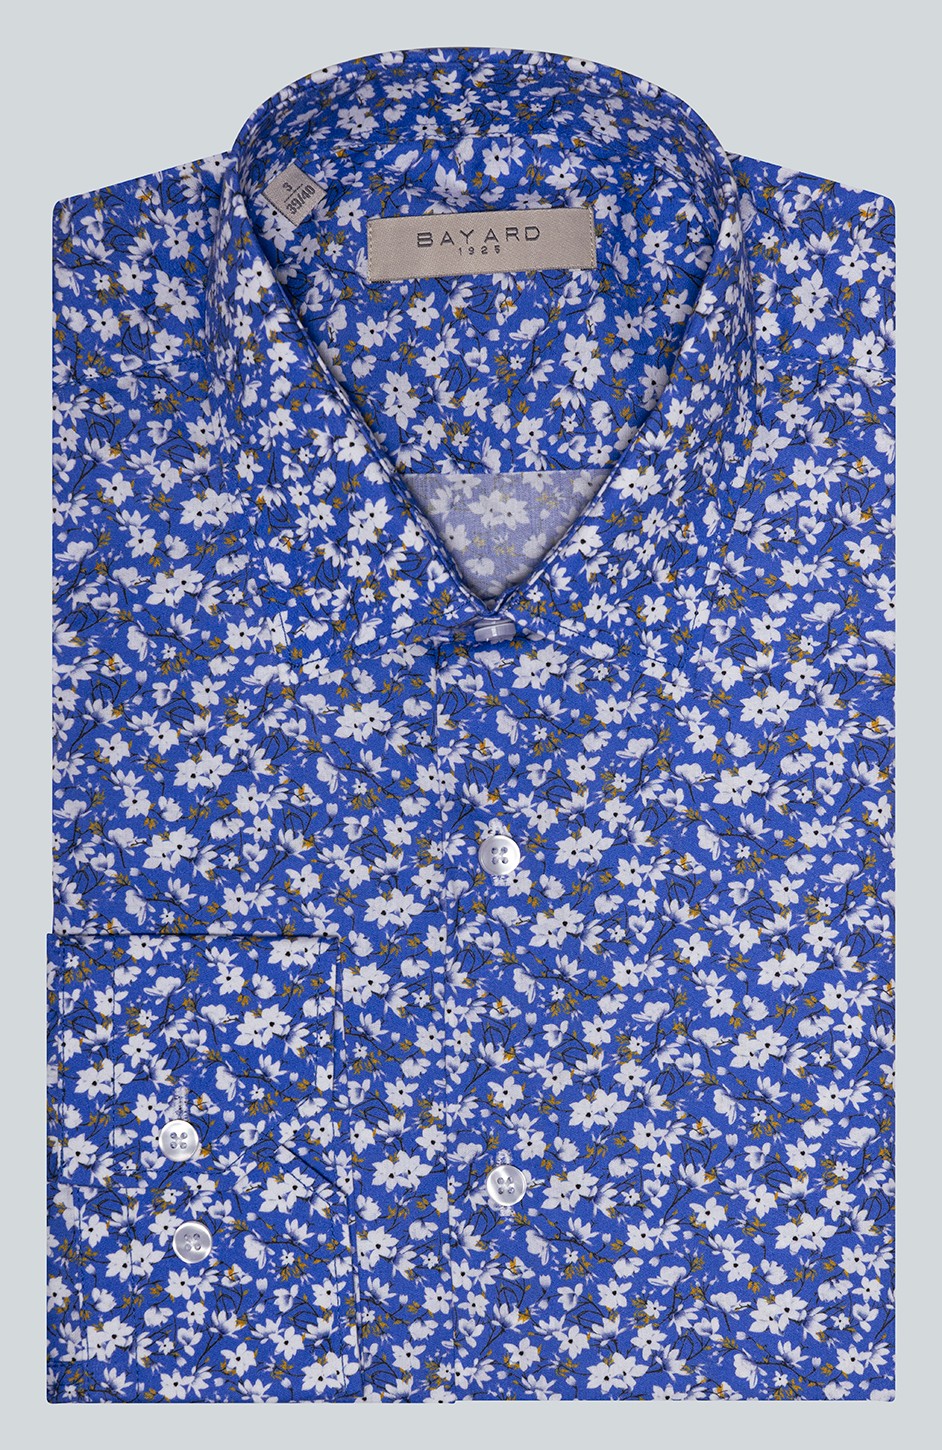 Chemise bleue à fleurs Nice